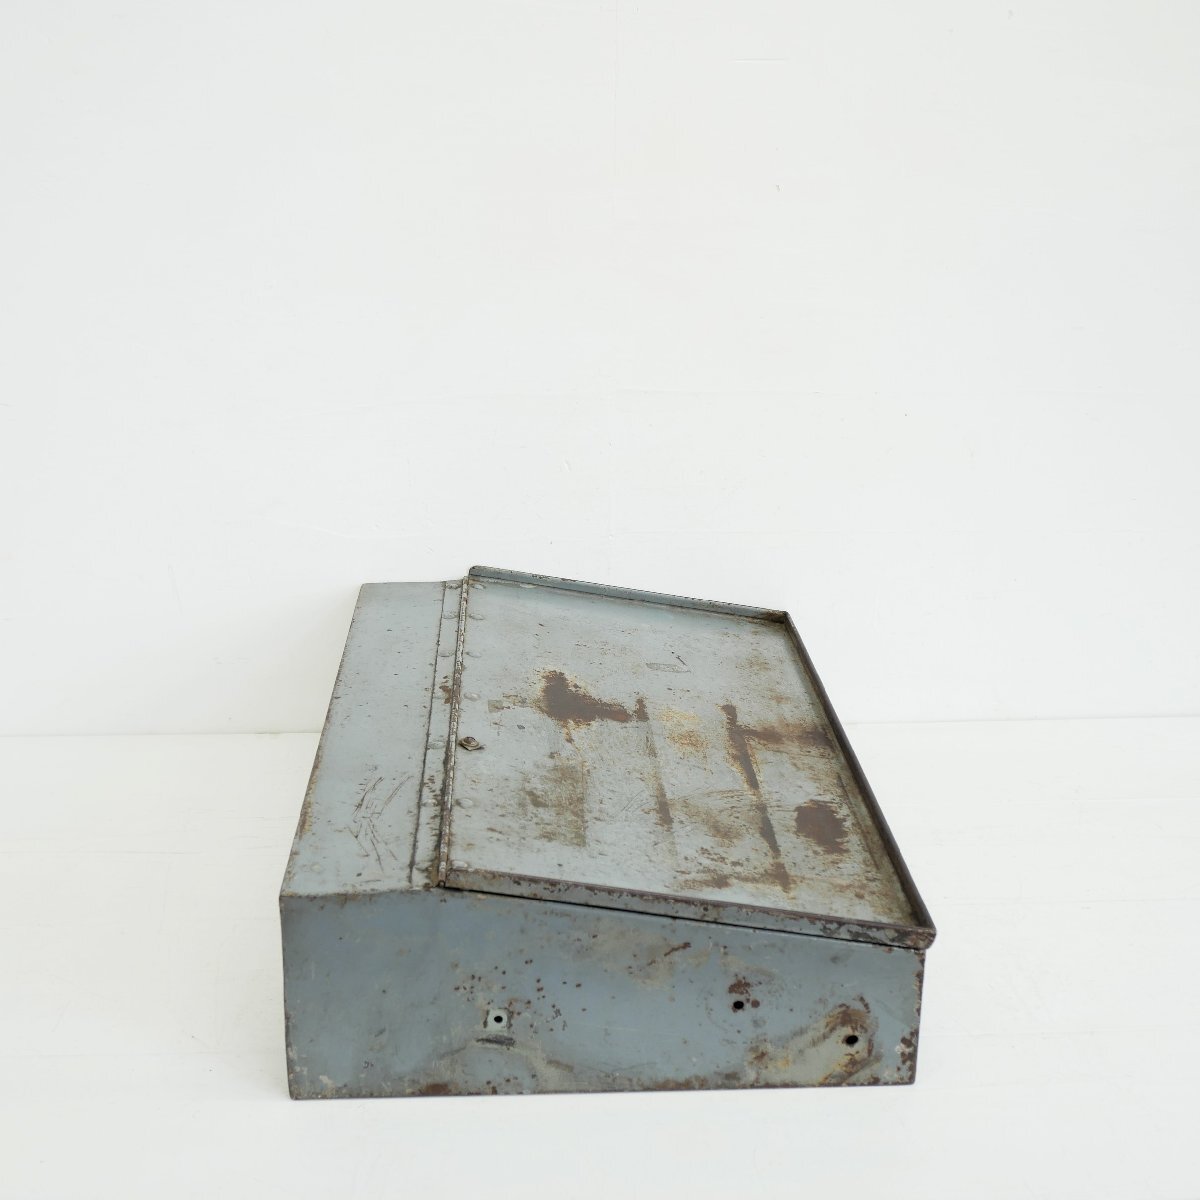 1970s TEXACO テキサコ ツールボックス / ヴィンテージ 工具箱 収納ケース #510-50-147-459_画像5